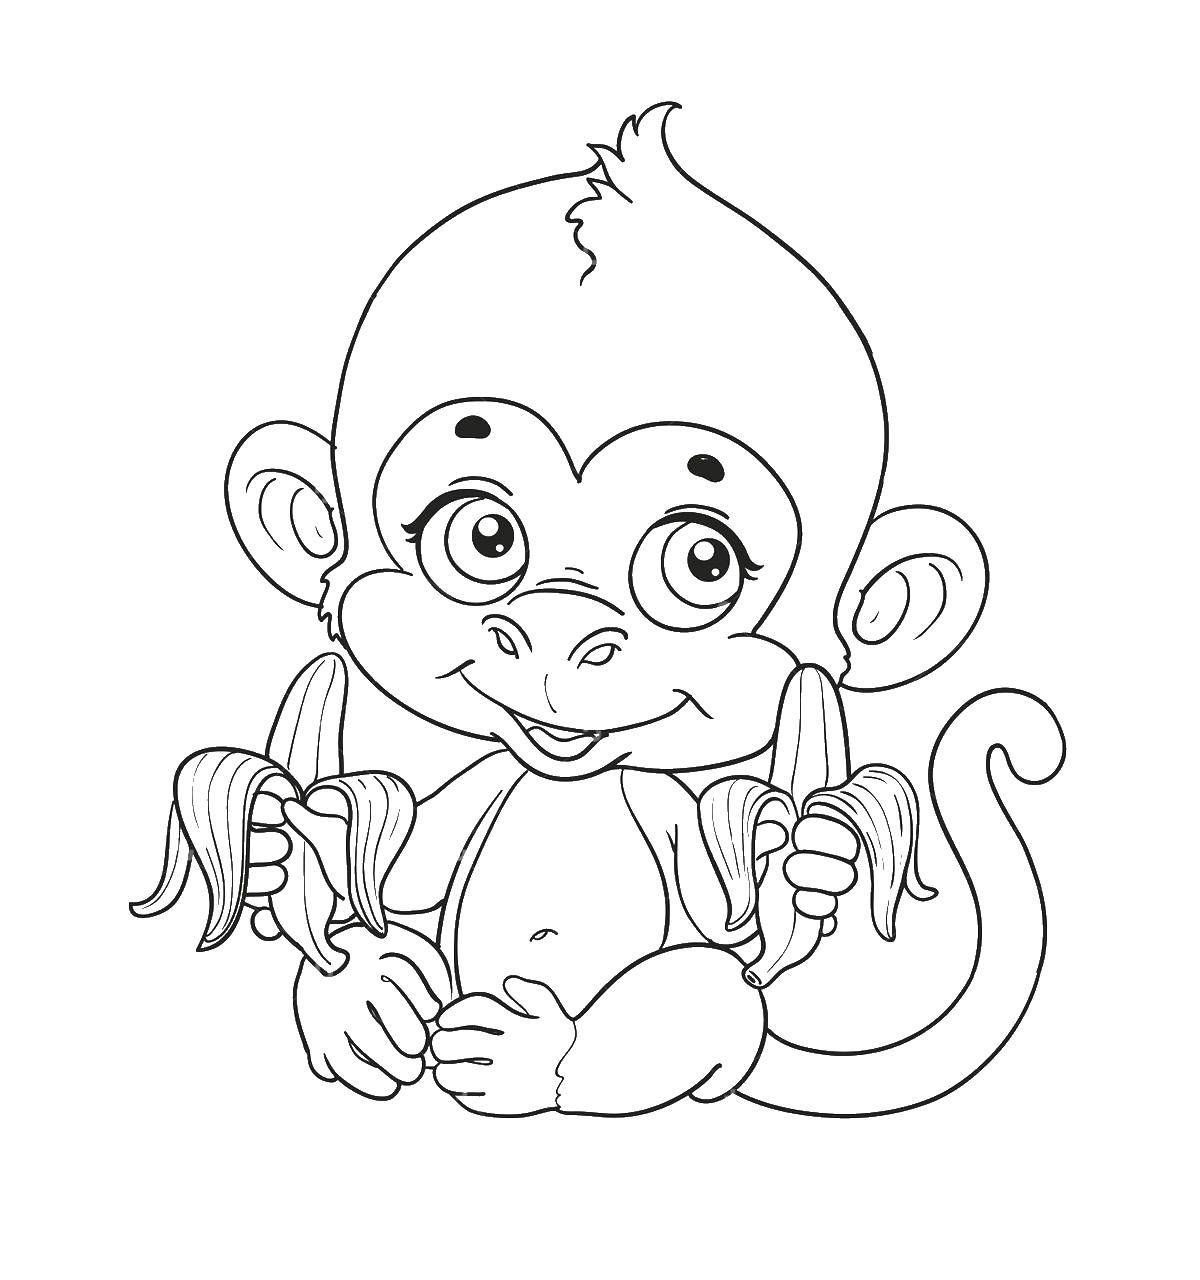 Coloring The monkey eats bananas. Category APE. Tags:  the monkey, banana.